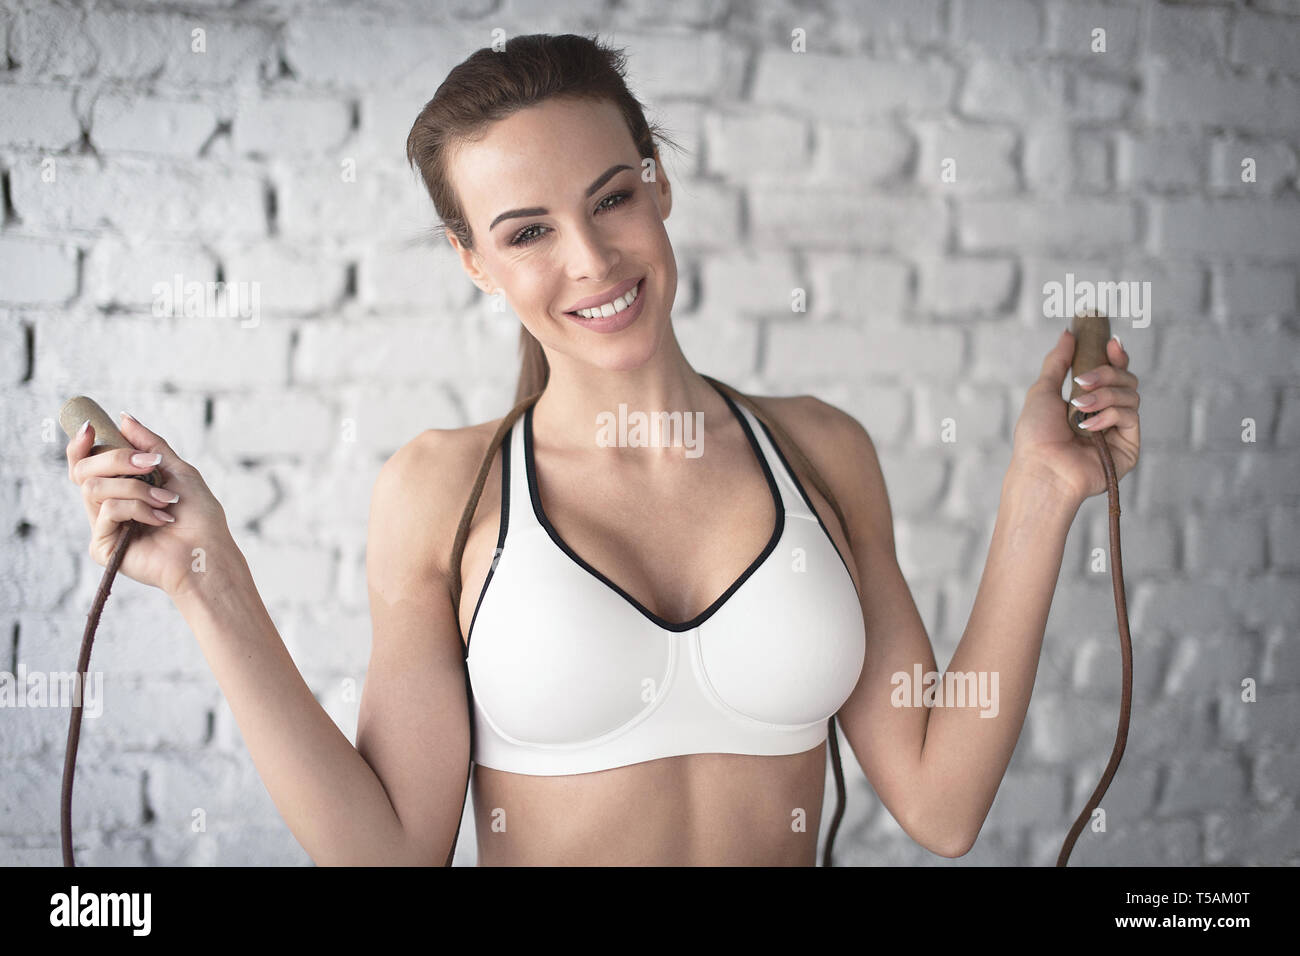 Glückliche junge Frau ist sport-Bh holding Seil springen Portrait, toothy Lächeln und Glück Stockfoto